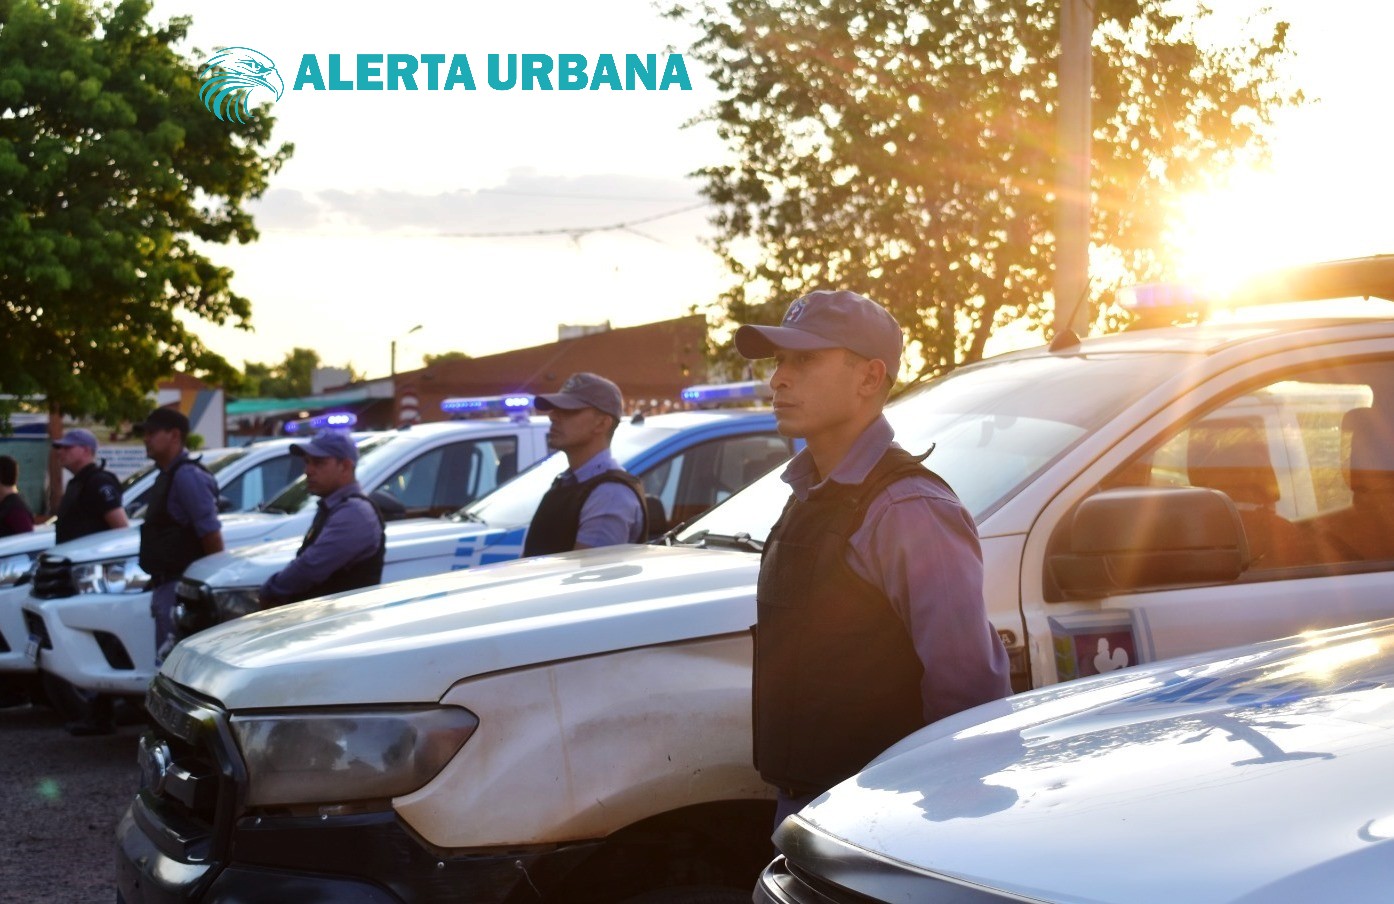 Fontana: más 100 de efectivos patrullaran la localidad en prevención de ilícitos y contravenciones